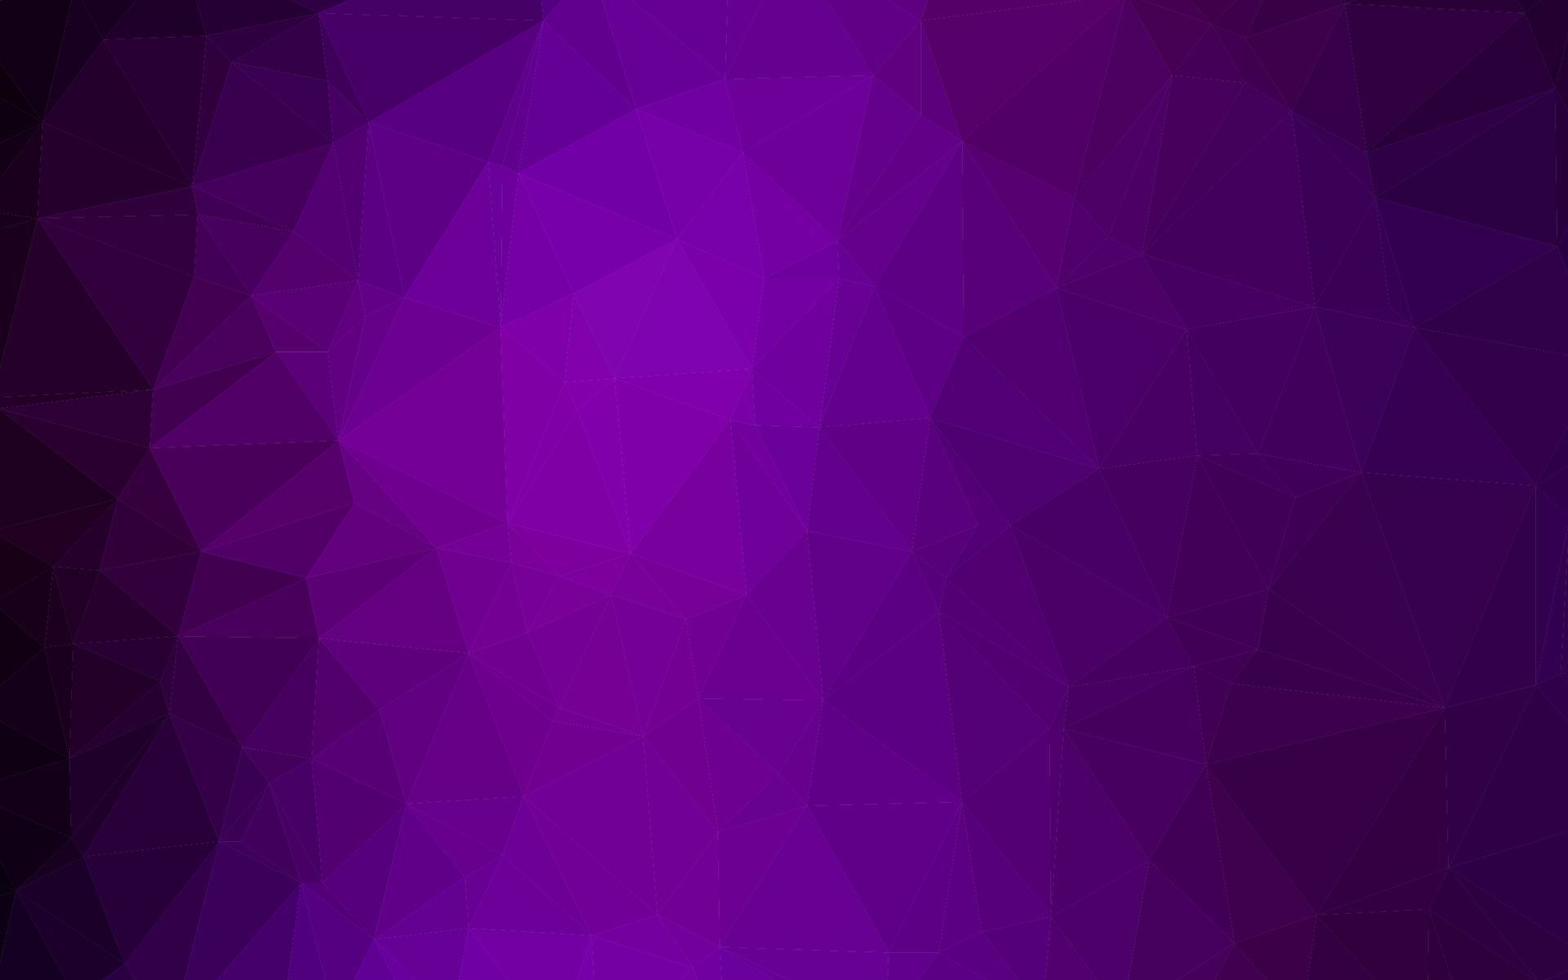 struttura poligonale astratta di vettore viola scuro.